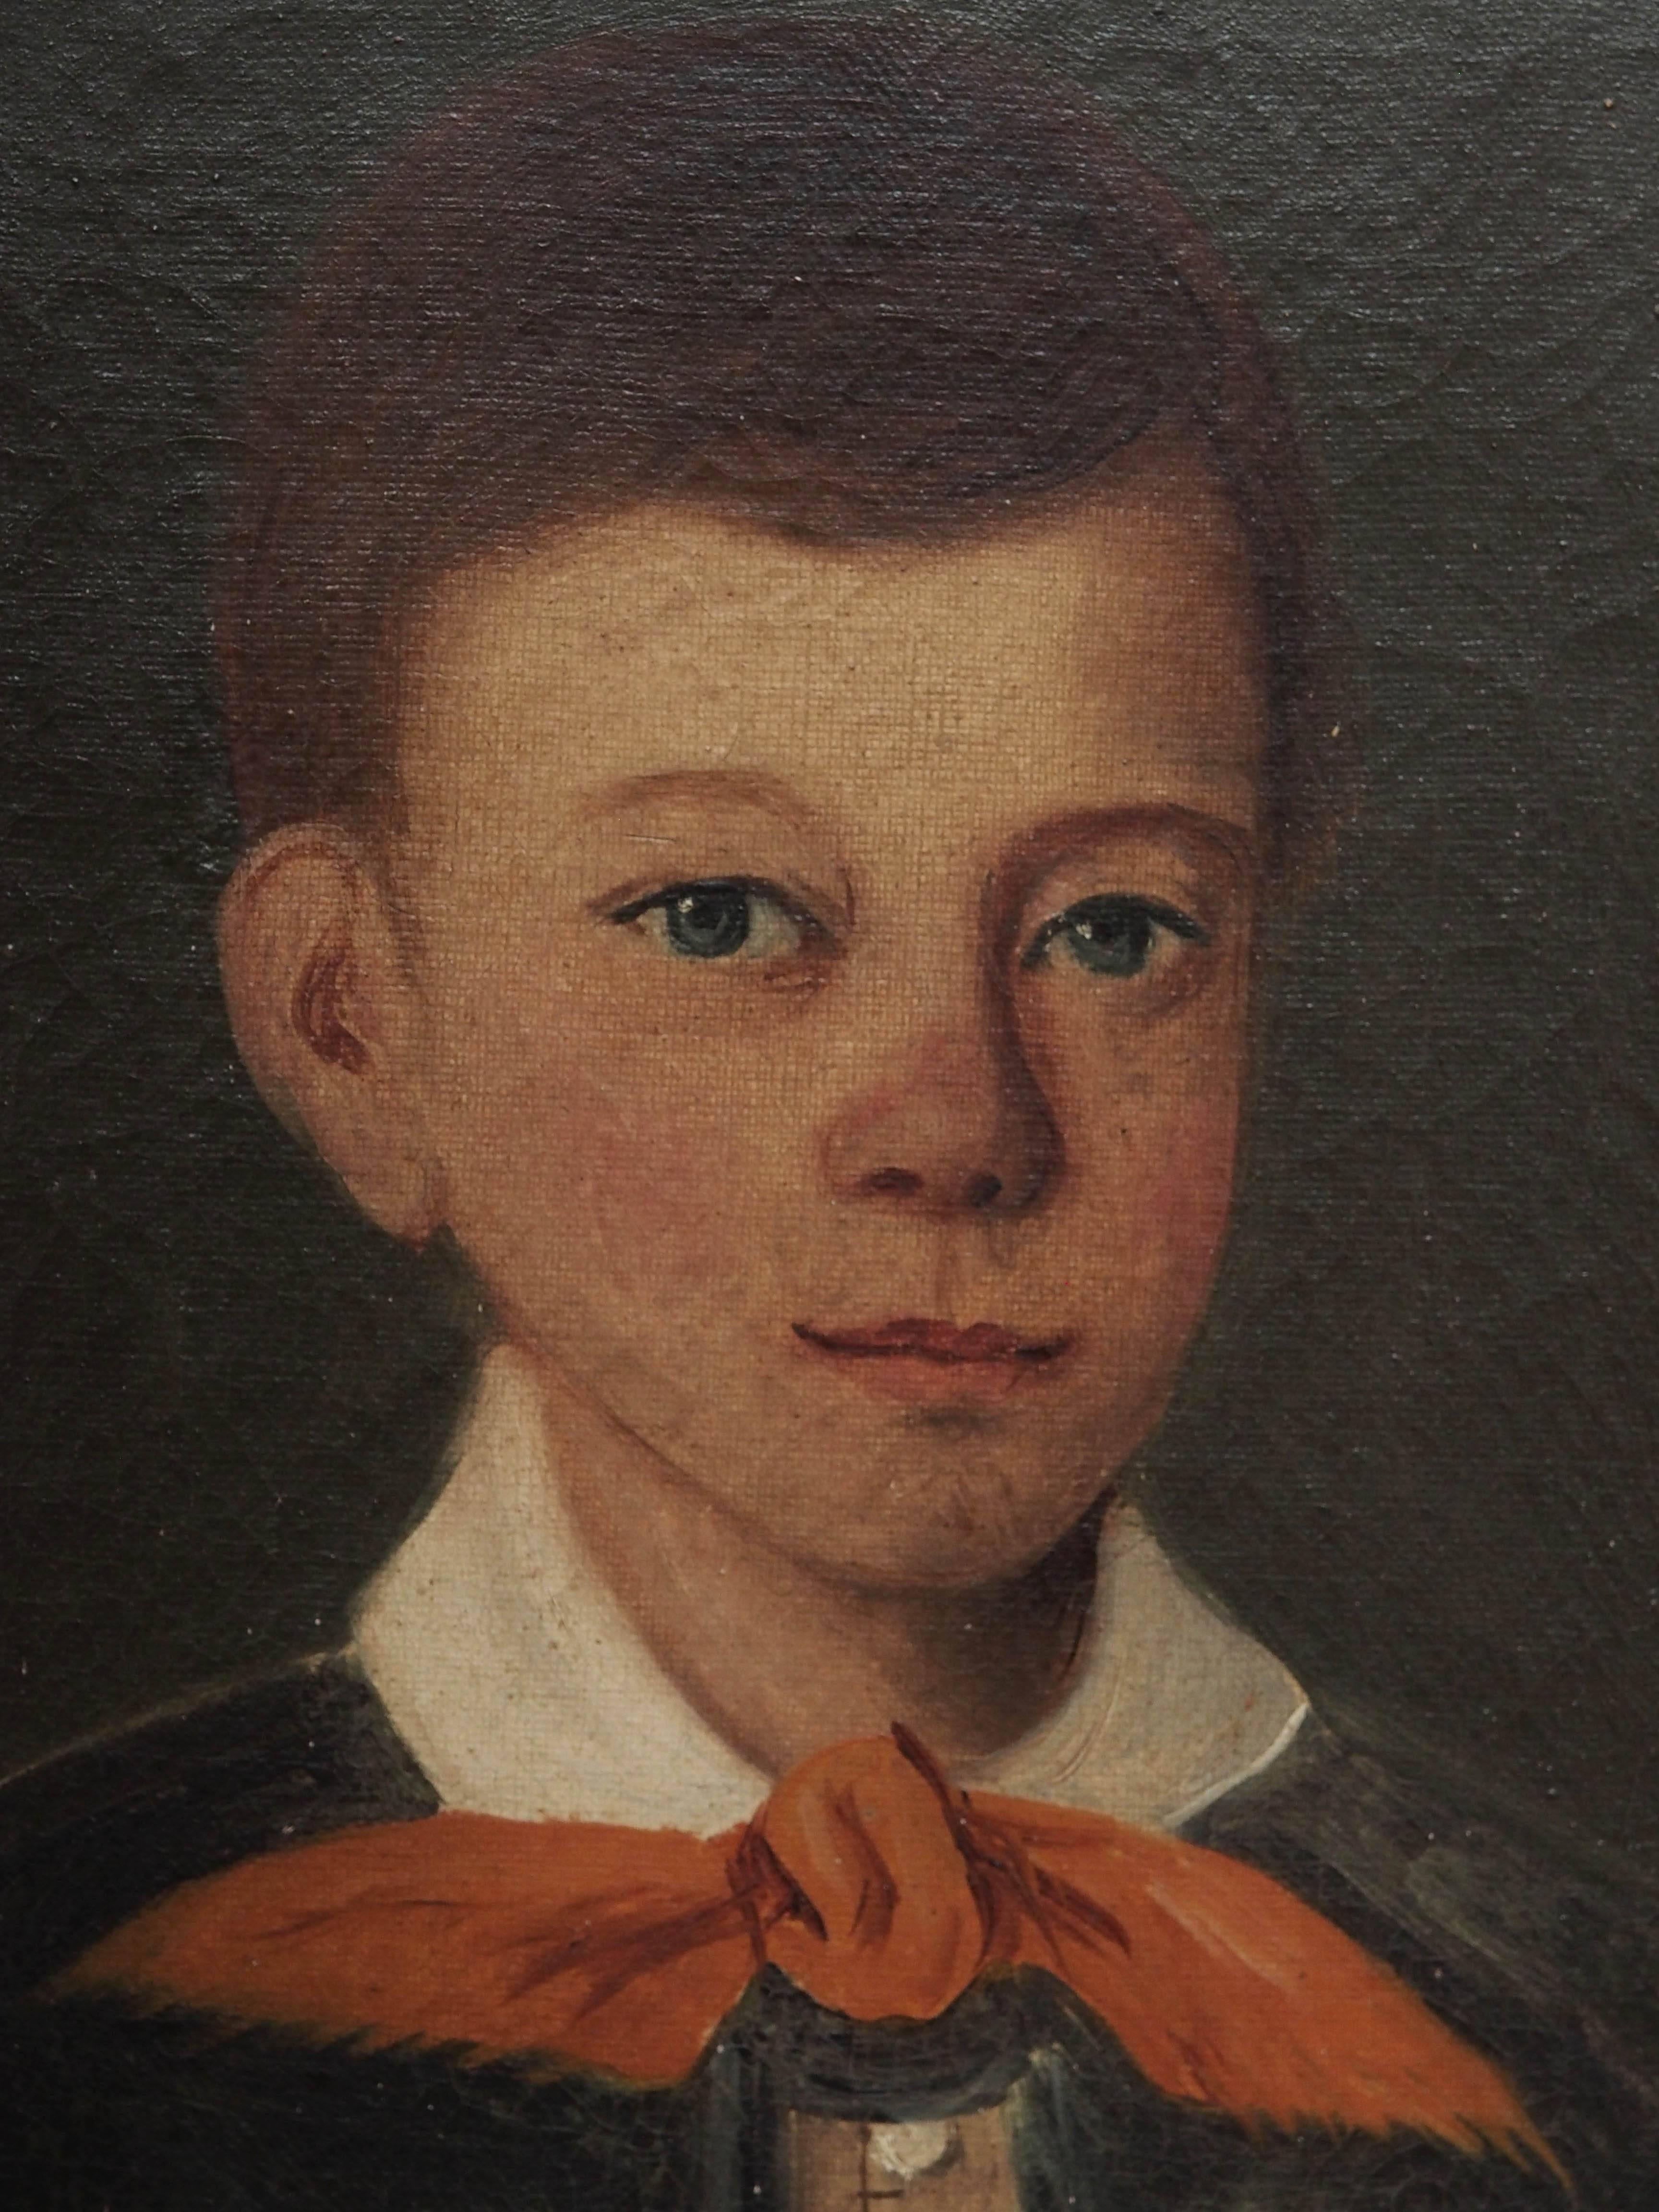 Porträt eines Jungen in Öl auf Leinwand, gemalt in Frankreich in den 1830er Jahren.
Maße: 18.5 x 15.